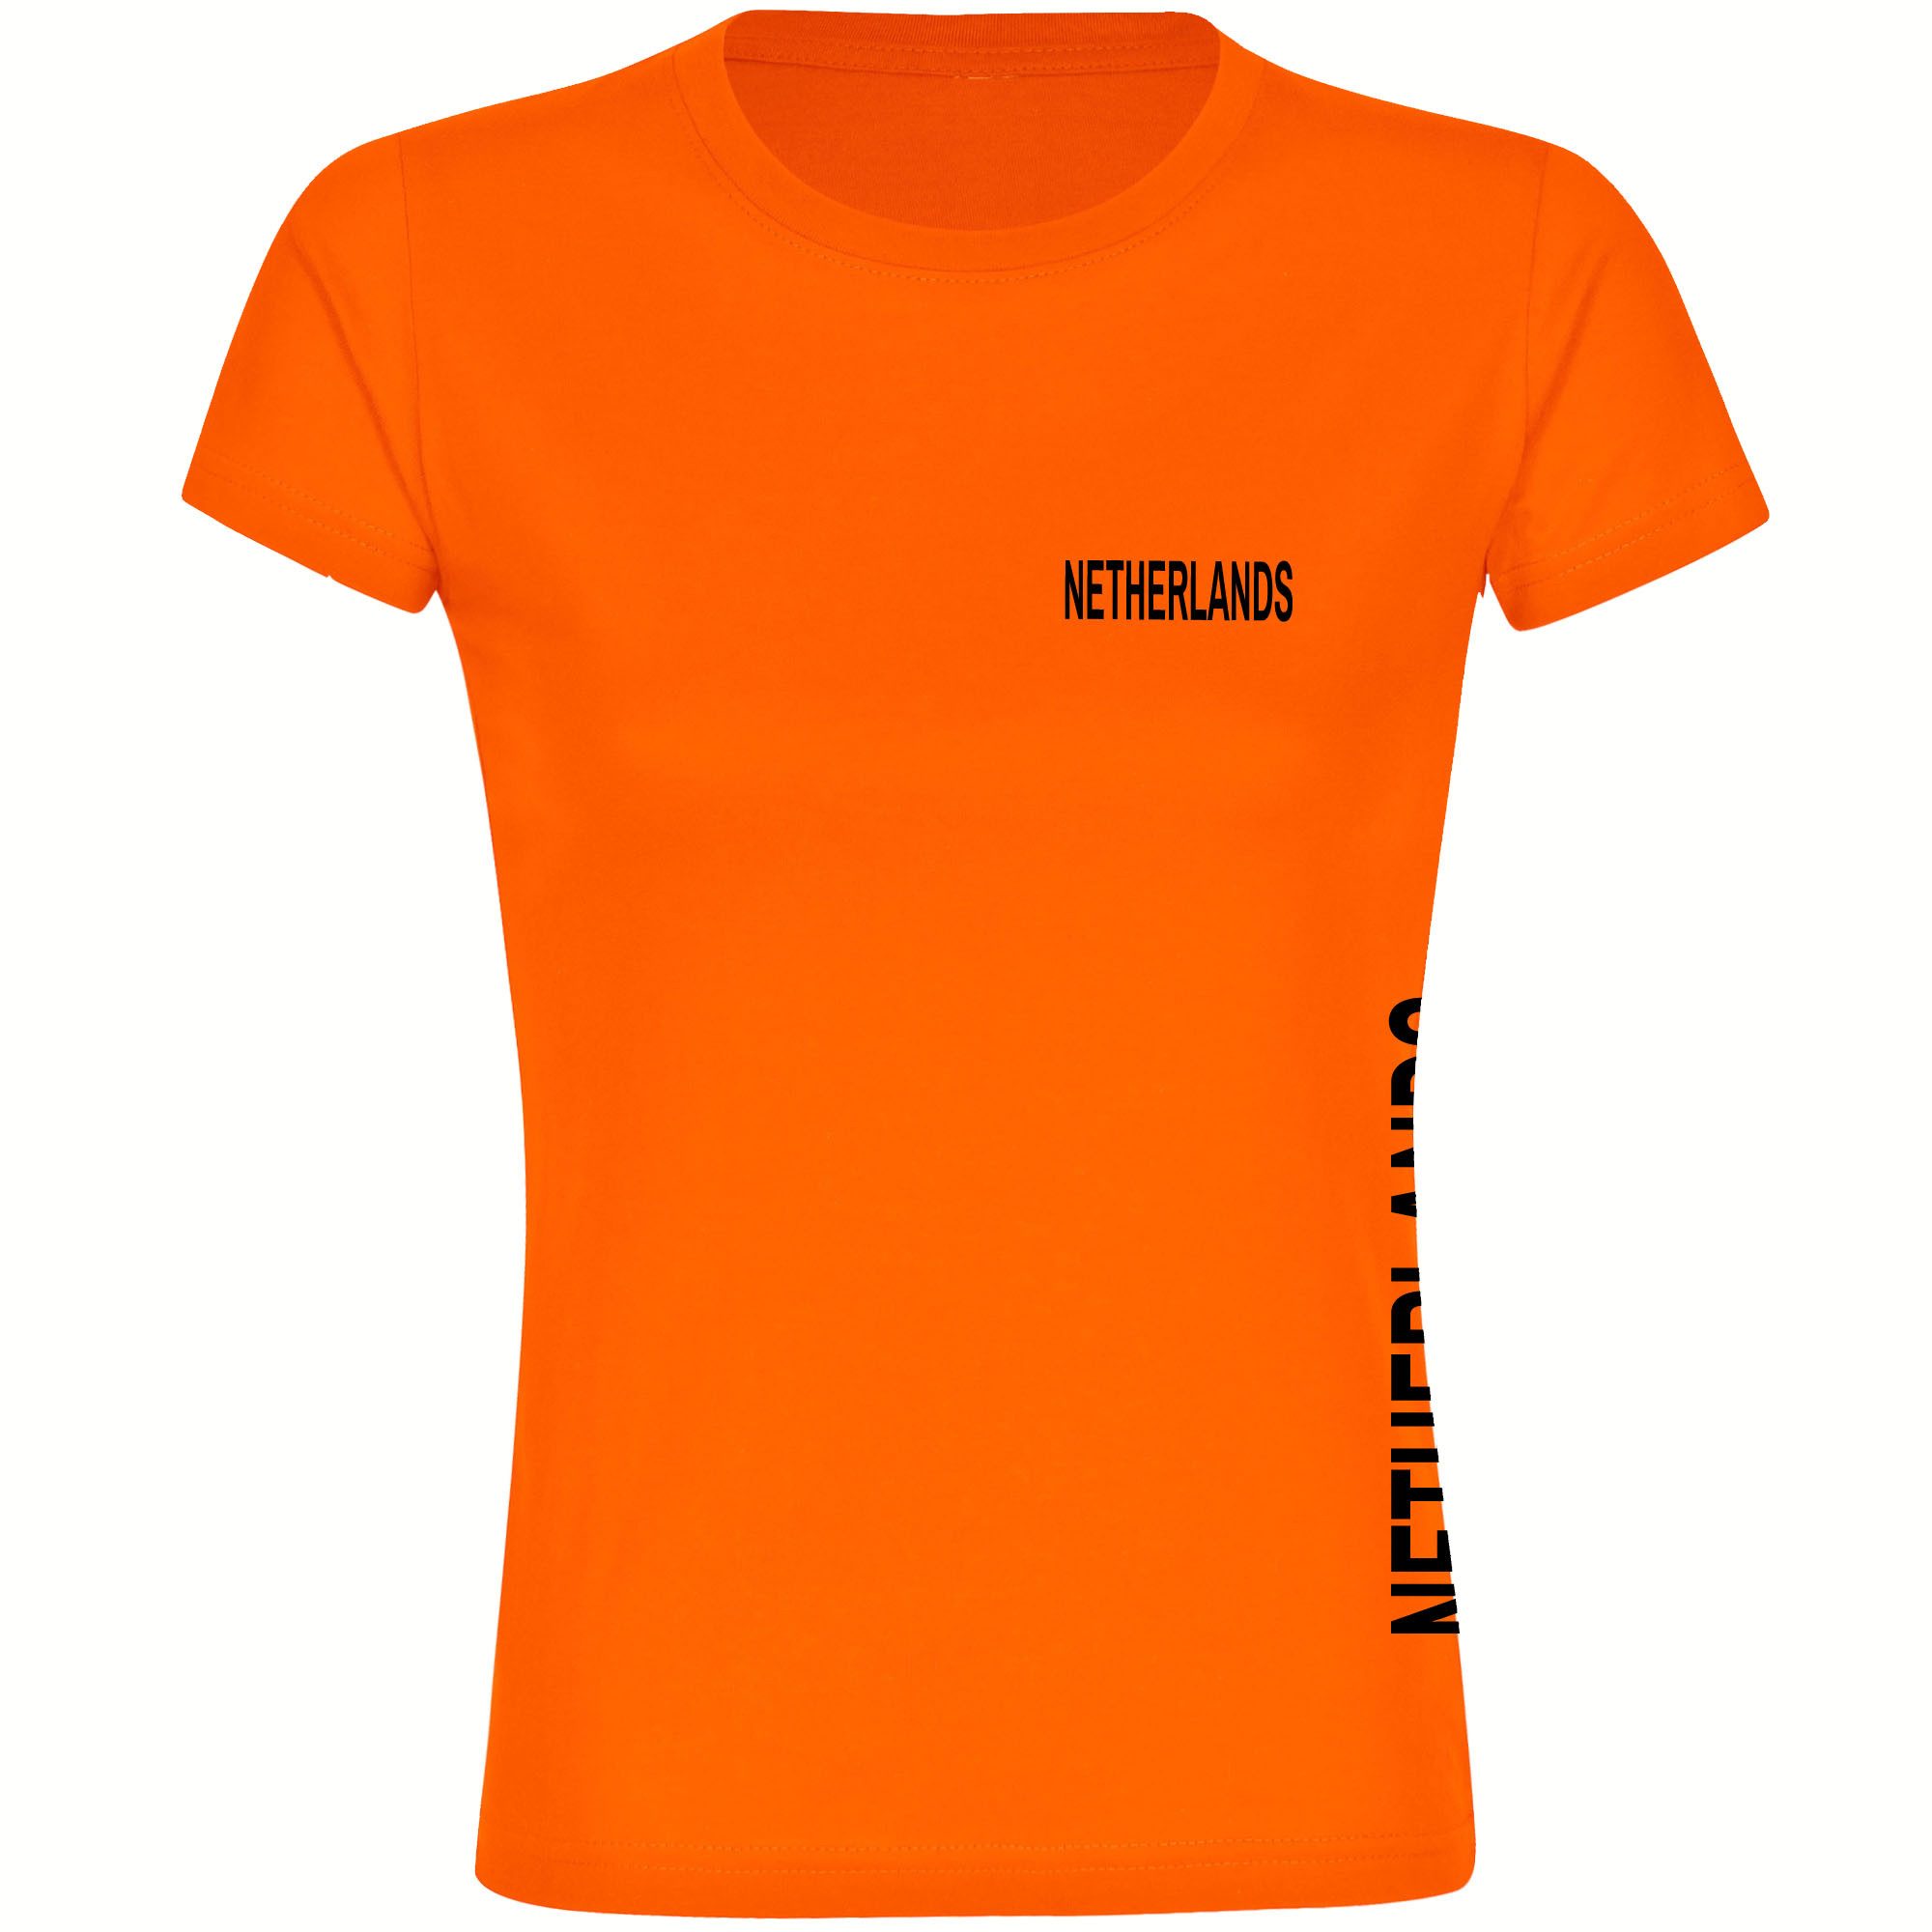 multifanshop T-Shirt Damen Netherlands - Brust & Seite - Frauen